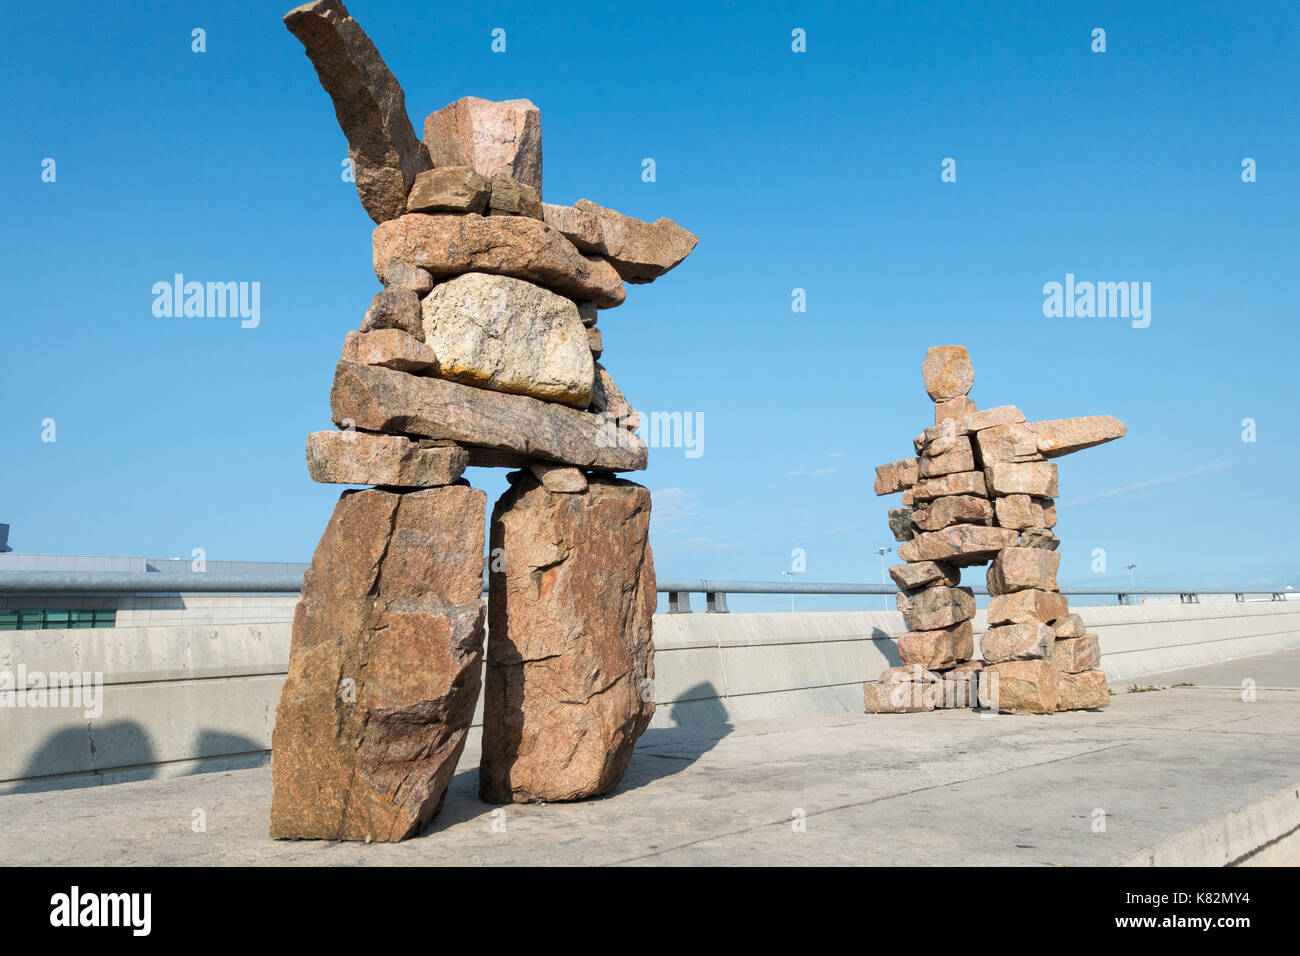 Deux sculptures inukshuk en granit dans l'air pose de rassemblement à l'aéroport Pearson de Toronto Ontario Canada Banque D'Images